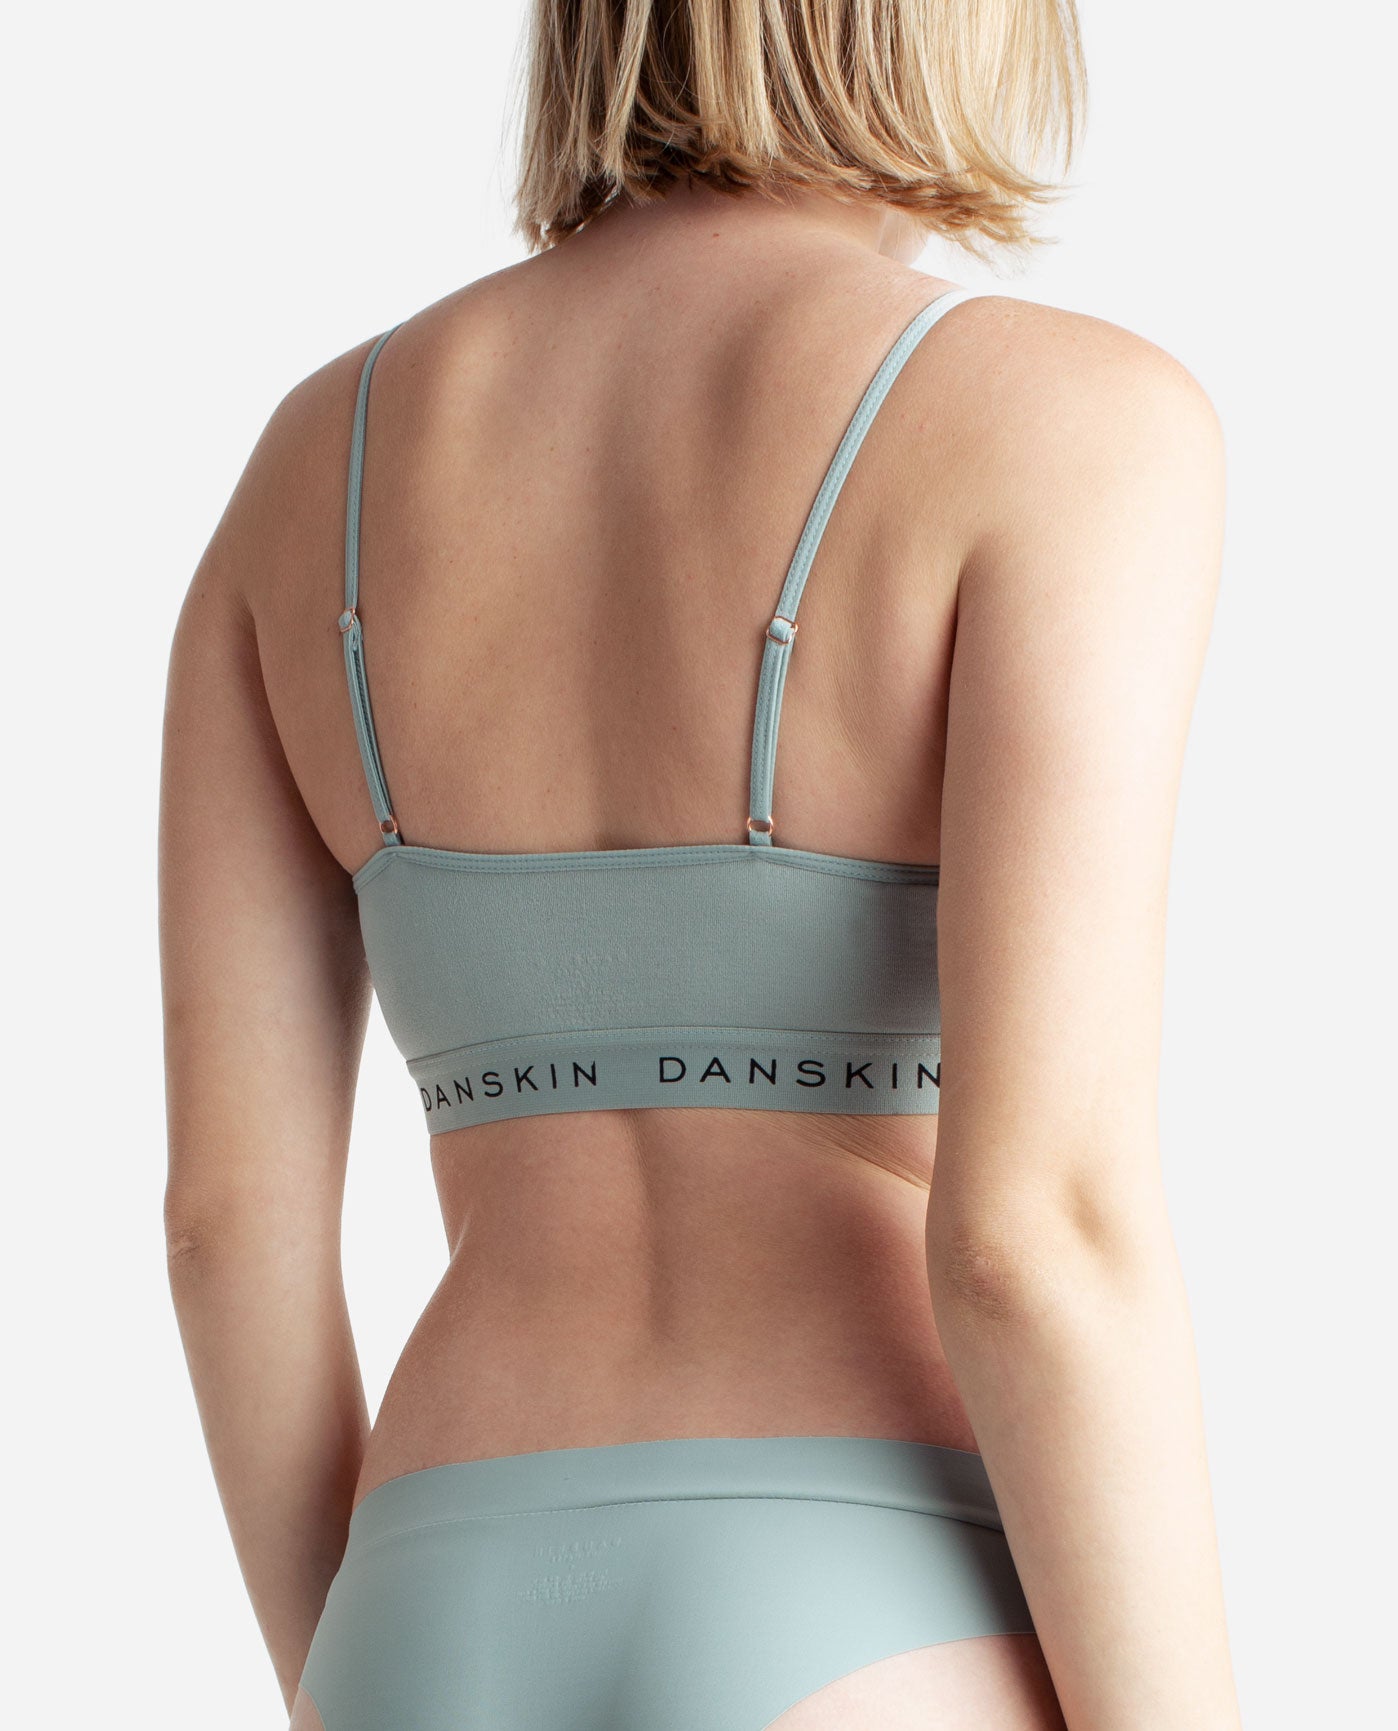 Danskin Daskin Sports Bra Multiple Size L - $20 (42% Off Retail